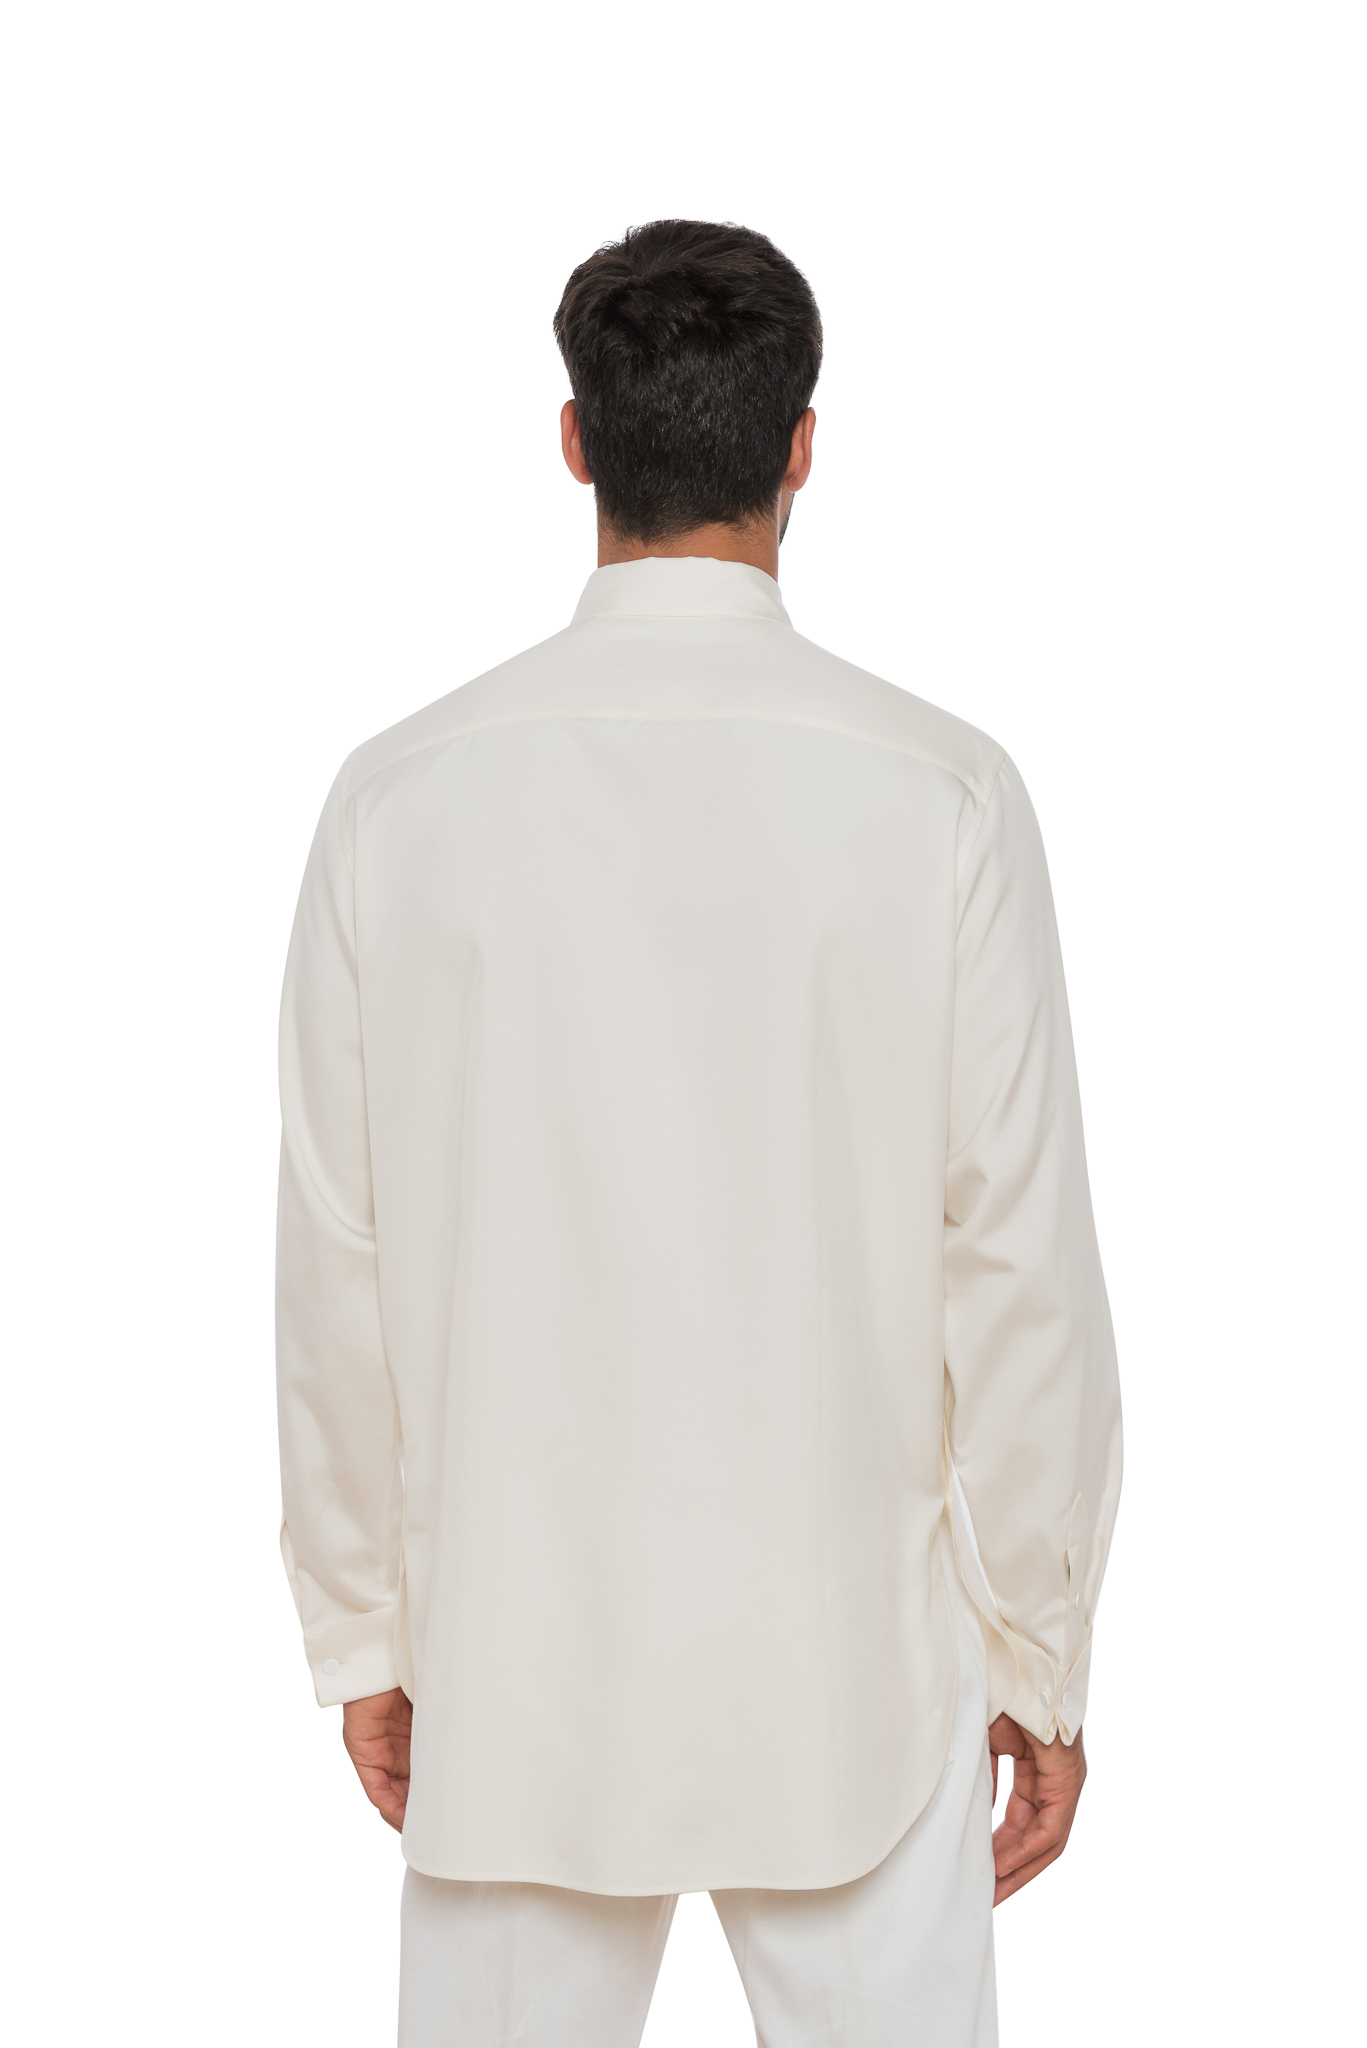 Louis Vuitton LV Stripe T-Shirt White. Size S0